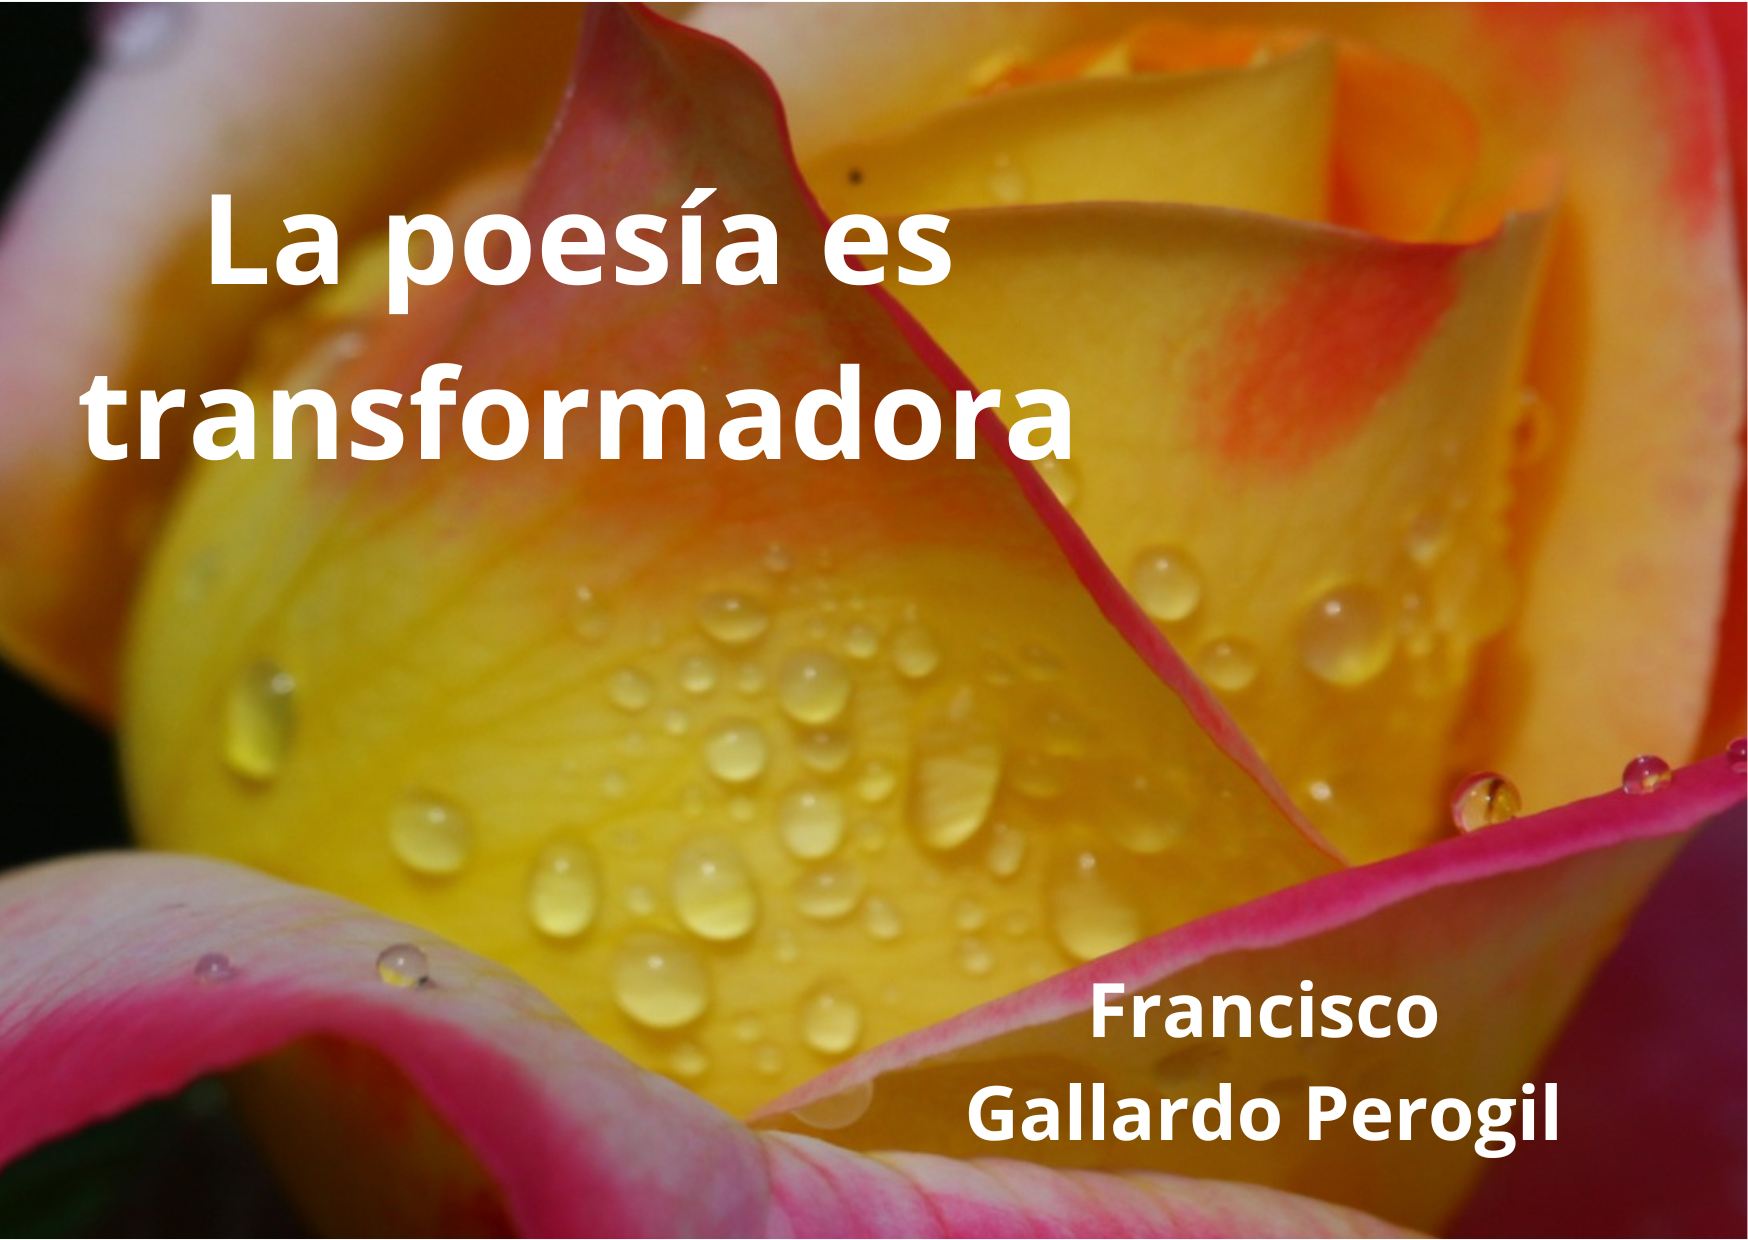 Francisco Gallardo Perogil Poeta